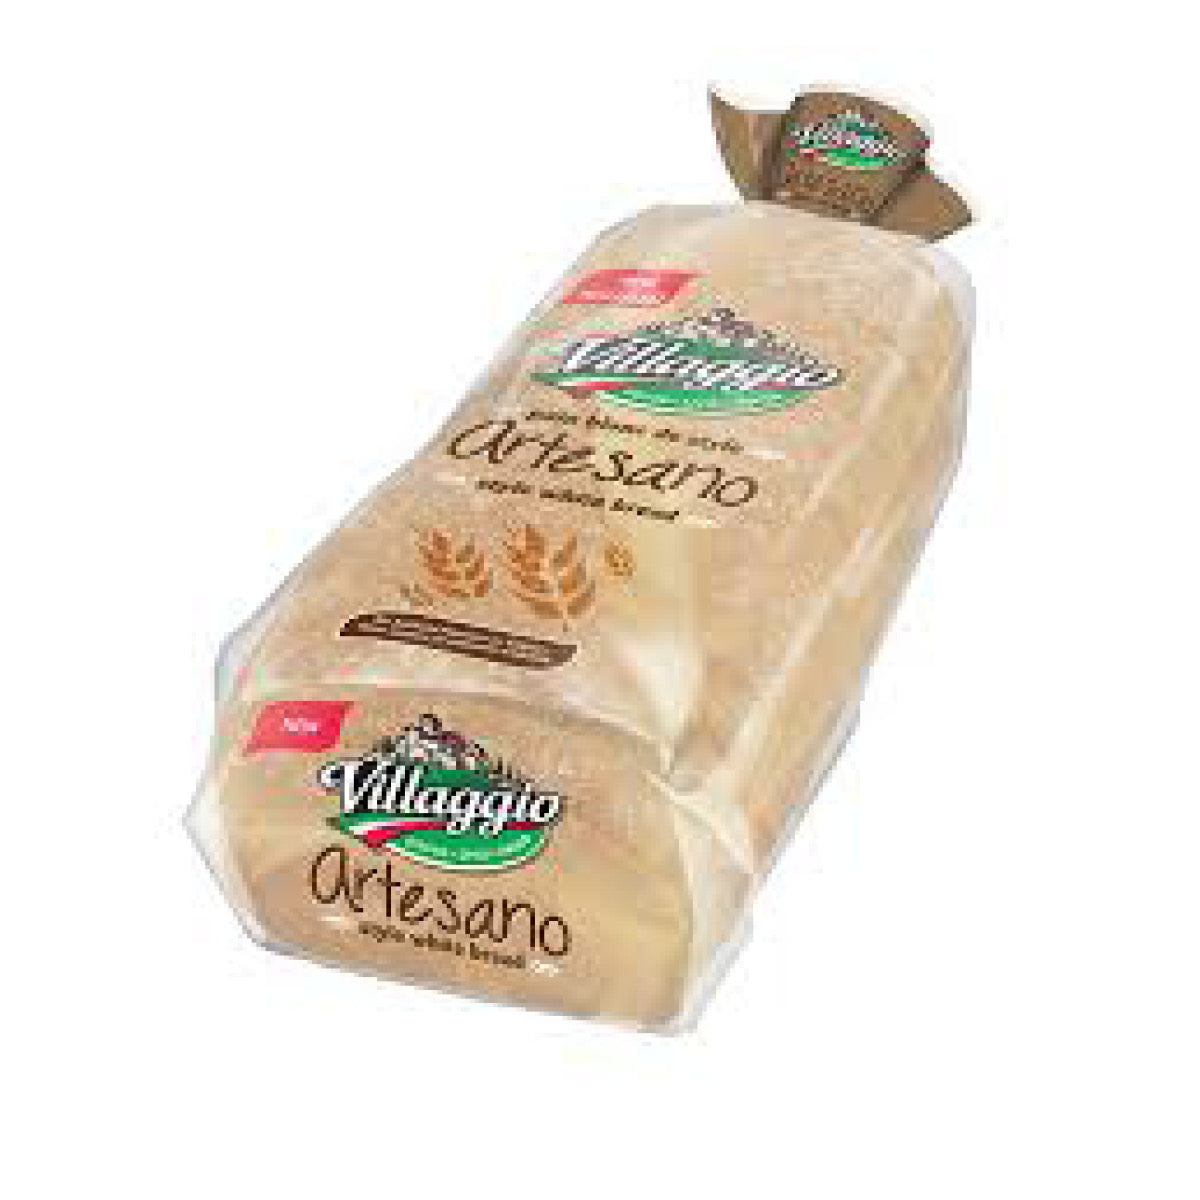 Villaggio Artesano White Bread Sliced, 540grams